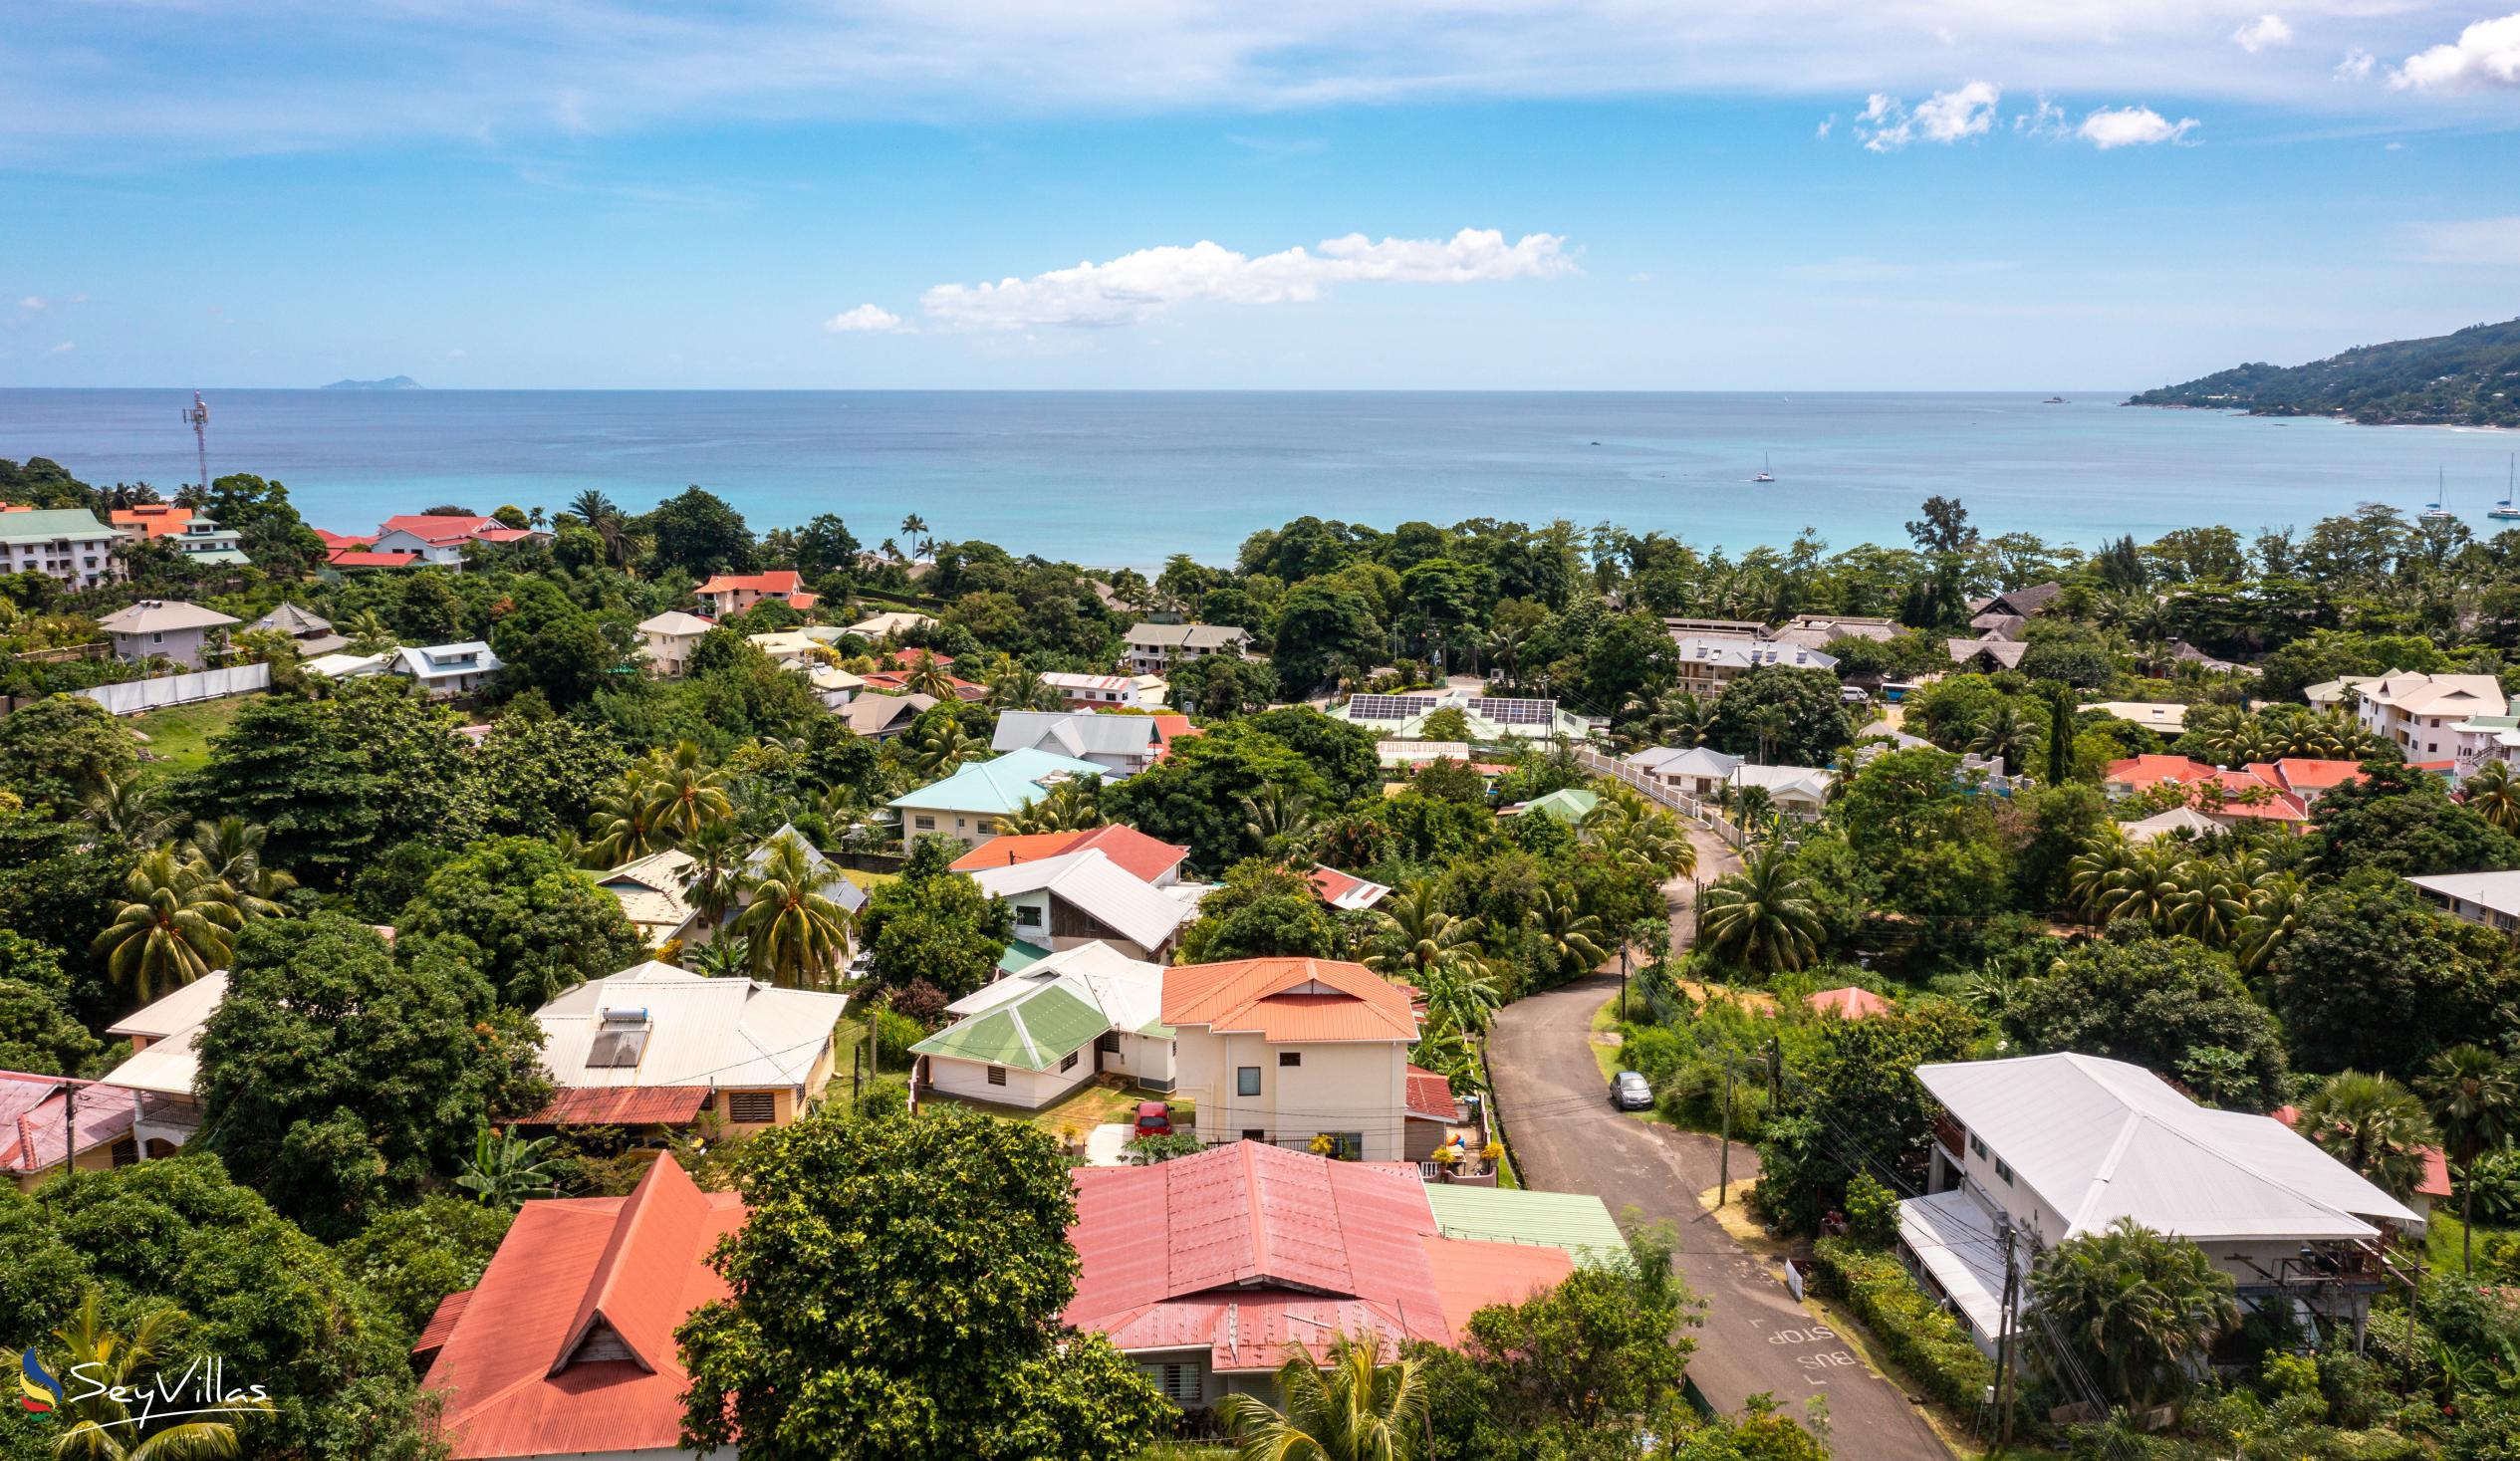 Foto 38: Villa Verde - Posizione - Mahé (Seychelles)